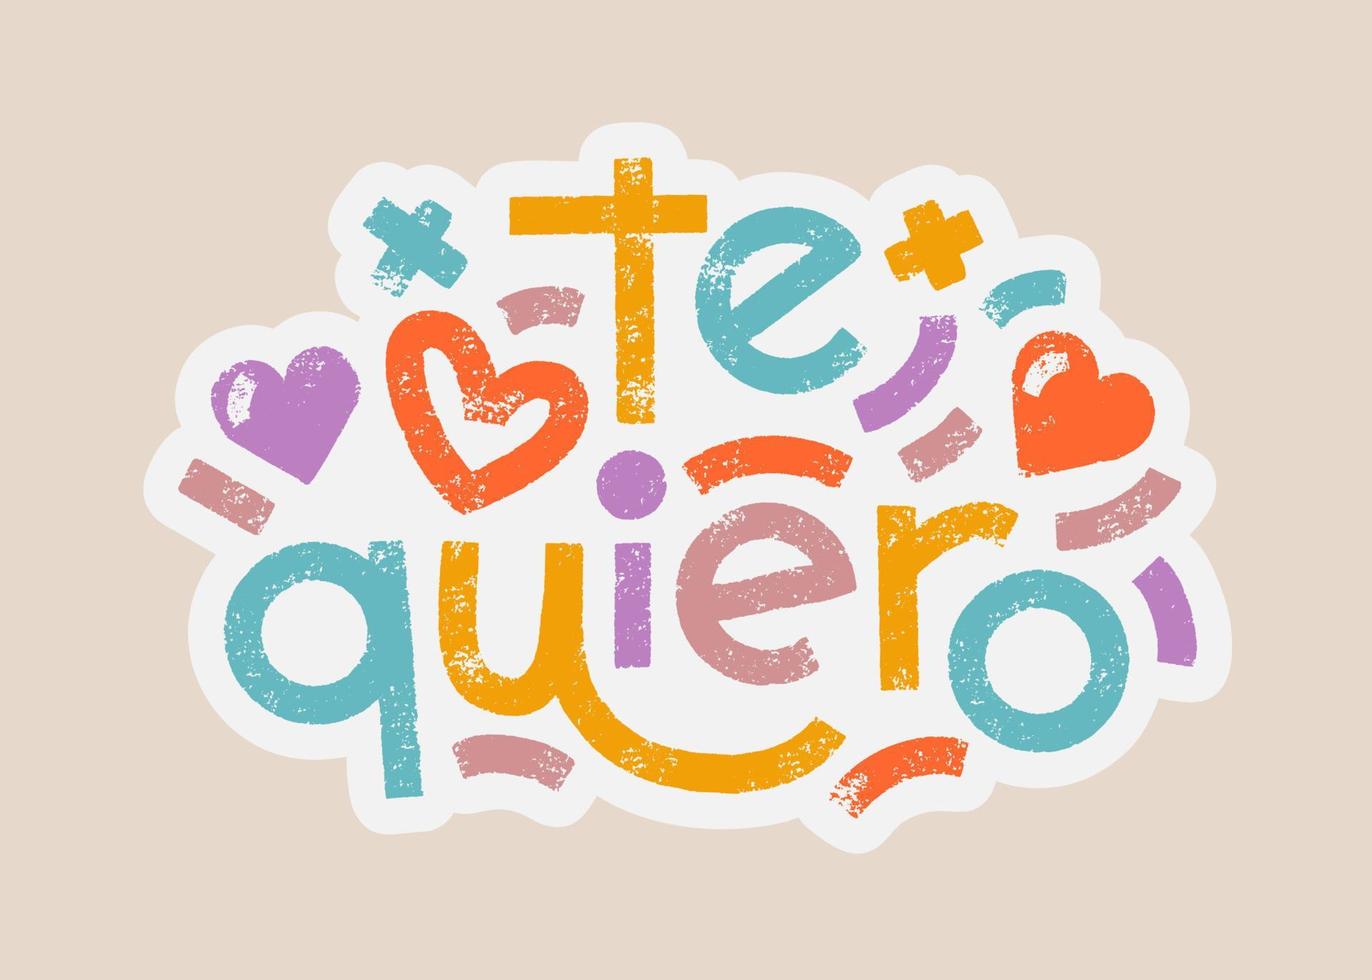 te quiero mots espagnols qui se traduisent par je t'aime modèle d'autocollant couleurs pastel lettrage gras. composition de typographie moderne de vecteur avec effet de texture. étiquette romantique de slogan commun.